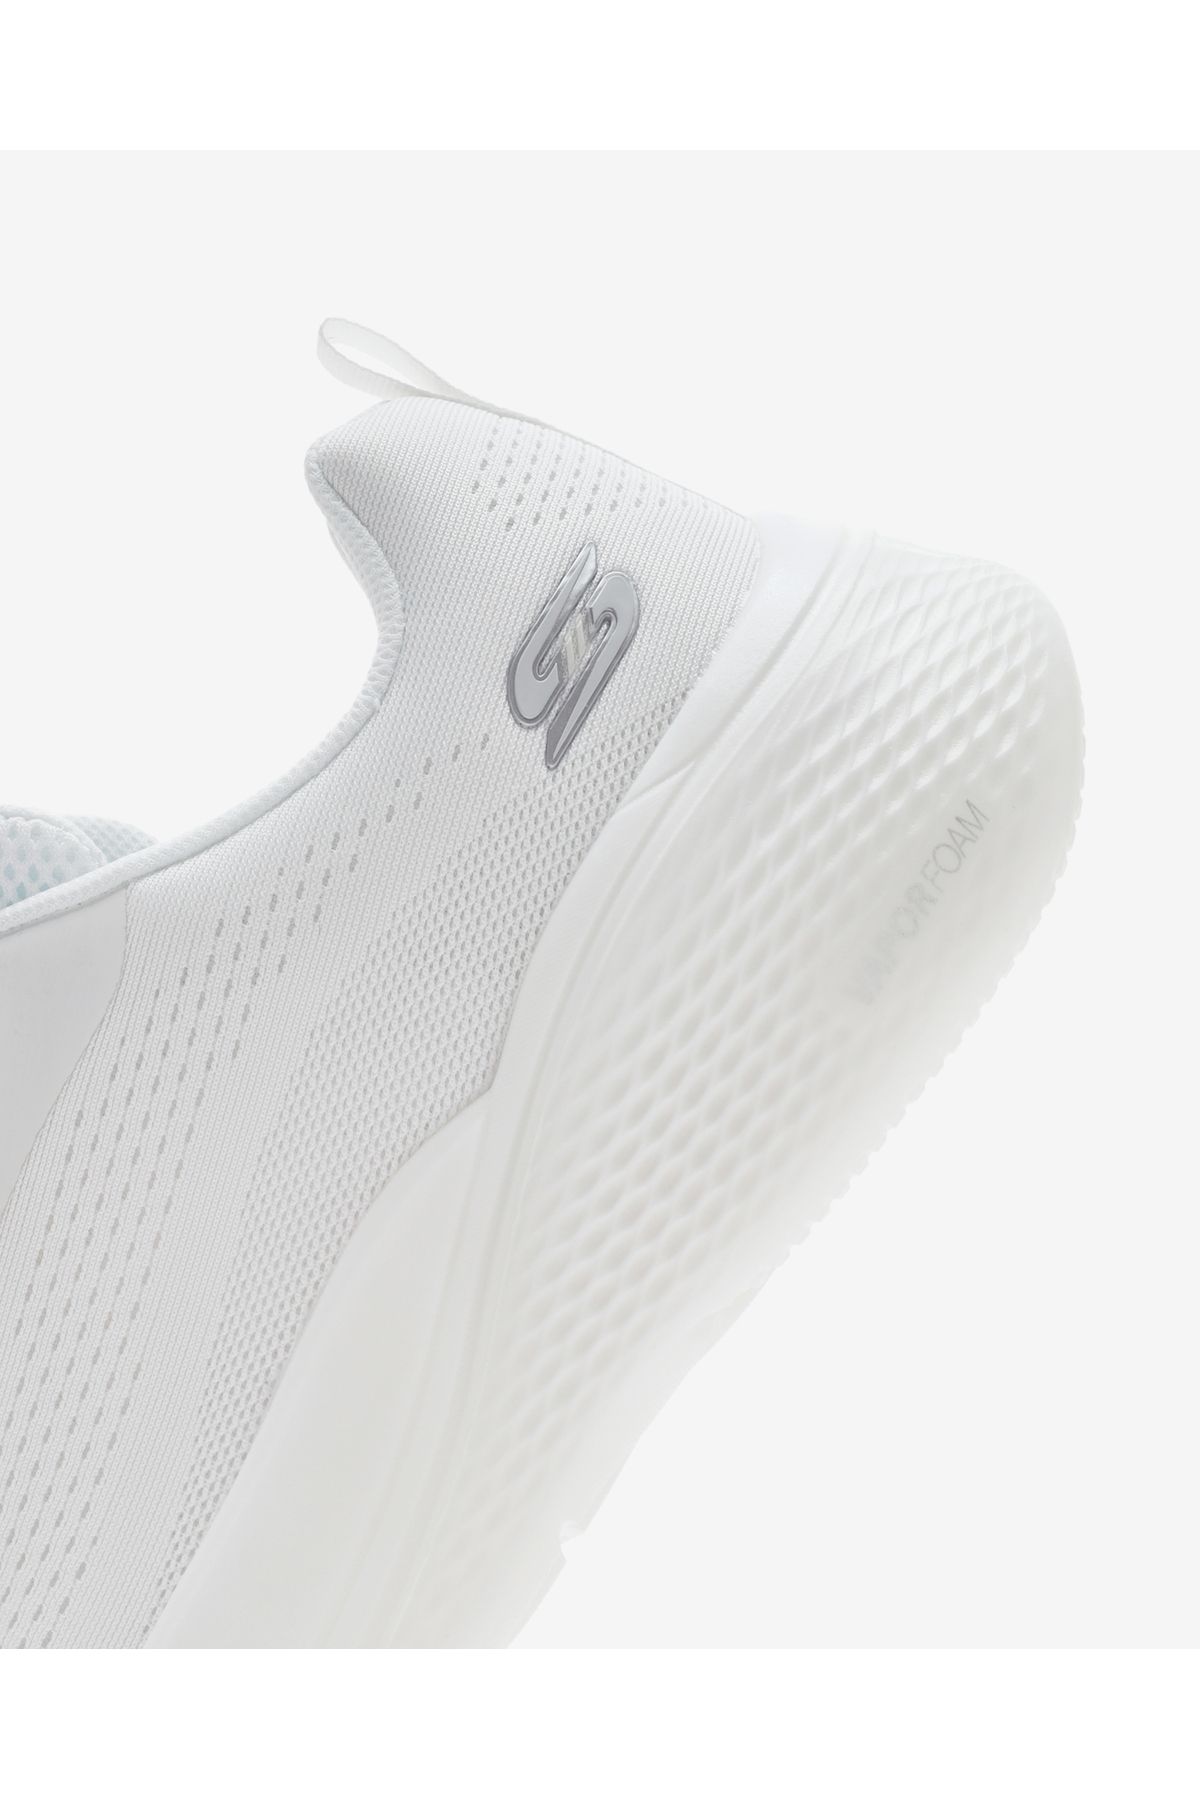 Skechers Bobs Infinity  -  Vapor Exact Erkek Beyaz Spor Ayakkabı 118250 Ofwt